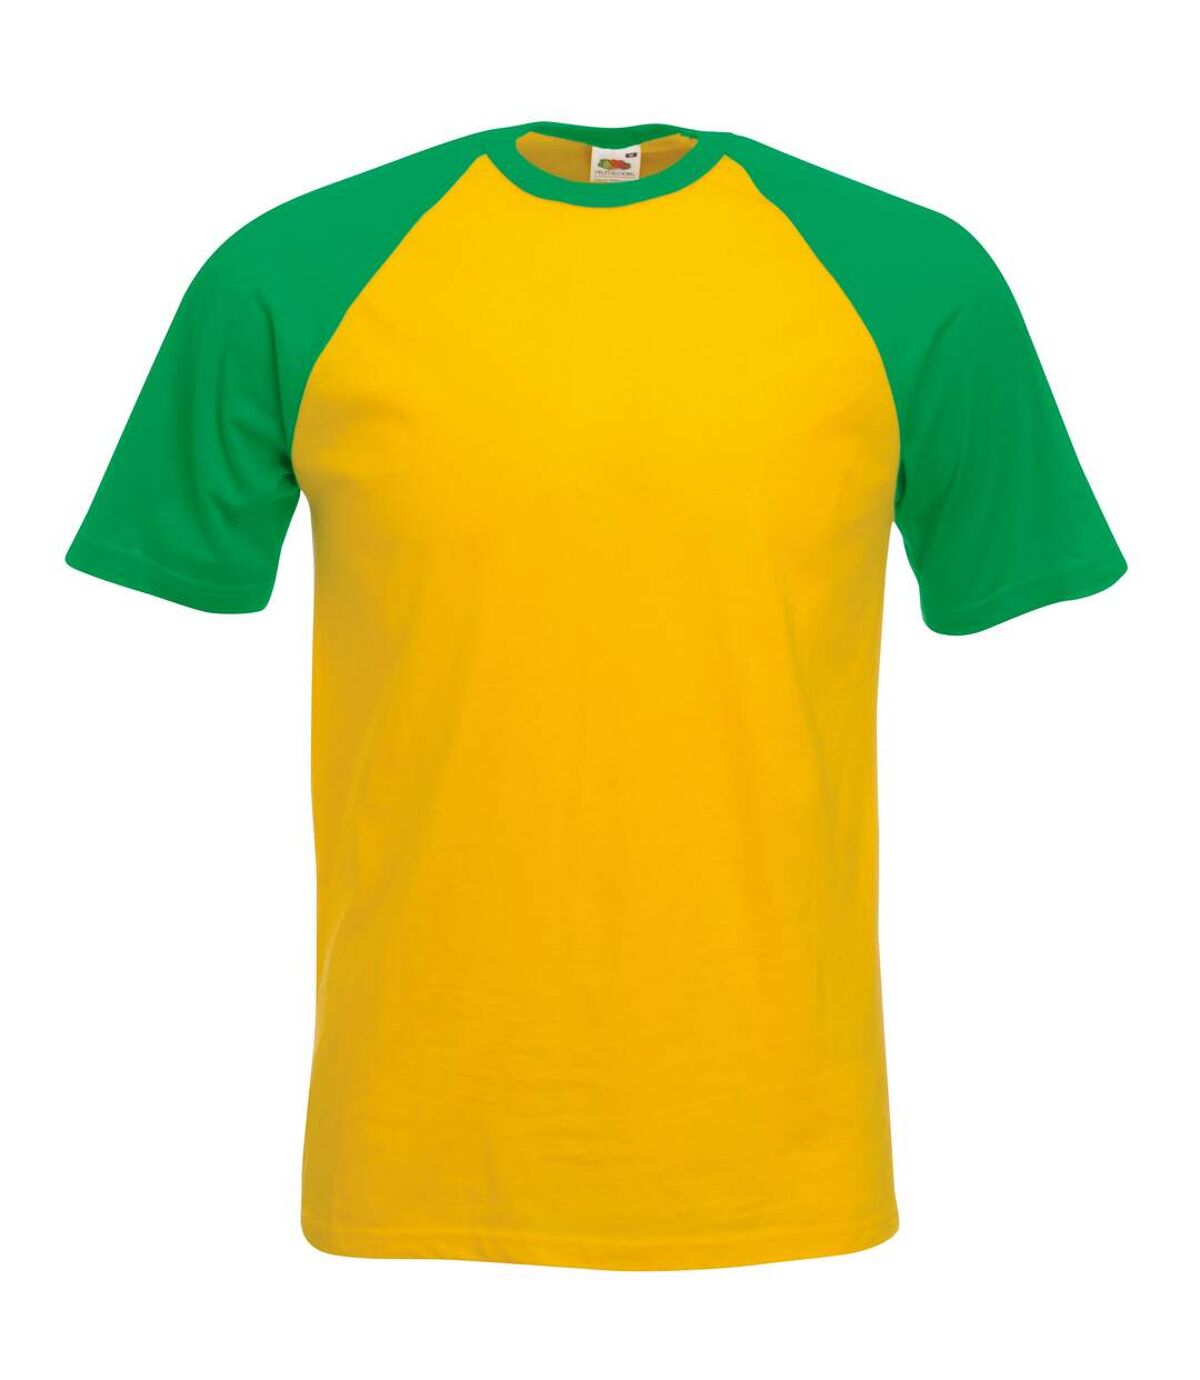 Fruit Of The Loom Mens Short Sleeve Baseball T-Shirt (Sunflower/Kelly Green) - UTBC327